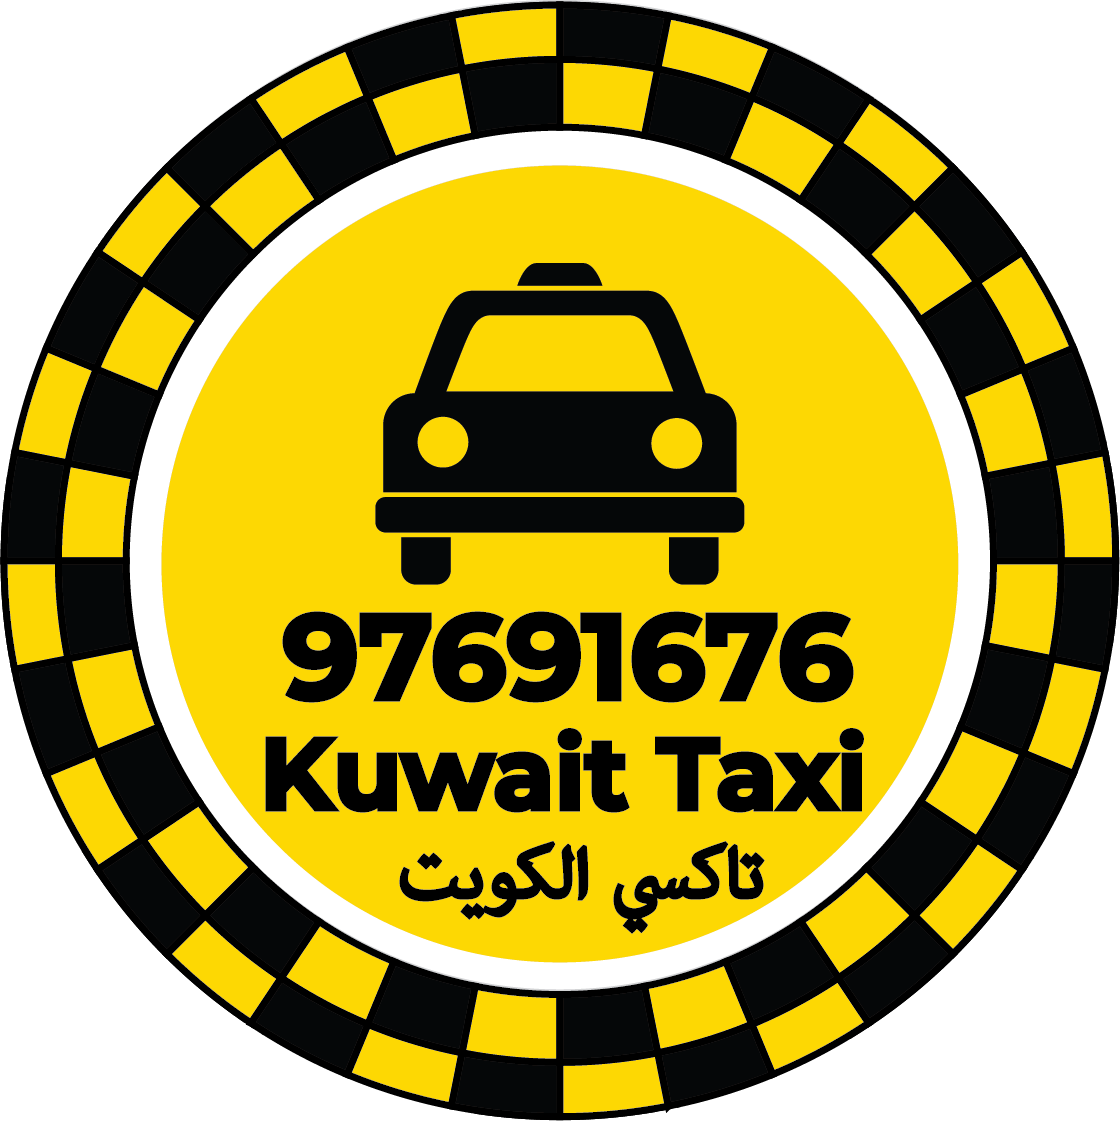 رقم تاكسي في ميناء عبد الله - تاكسي ميناء عبد الله الكويت